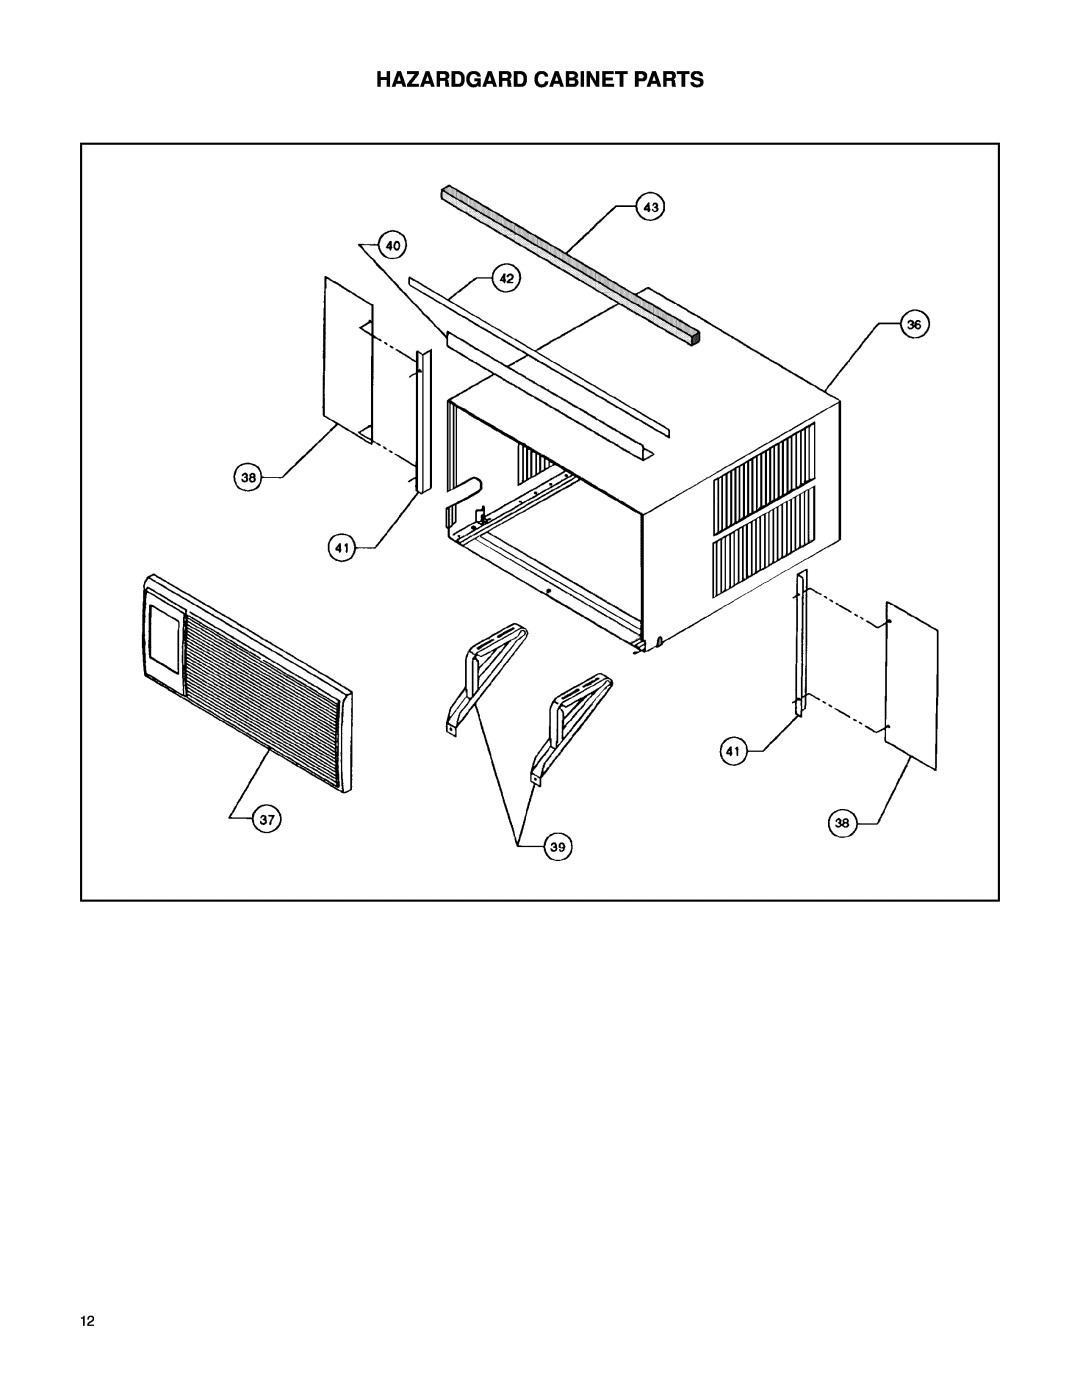 Friedrich 60 Hz manual Hazardgard Cabinet Parts 